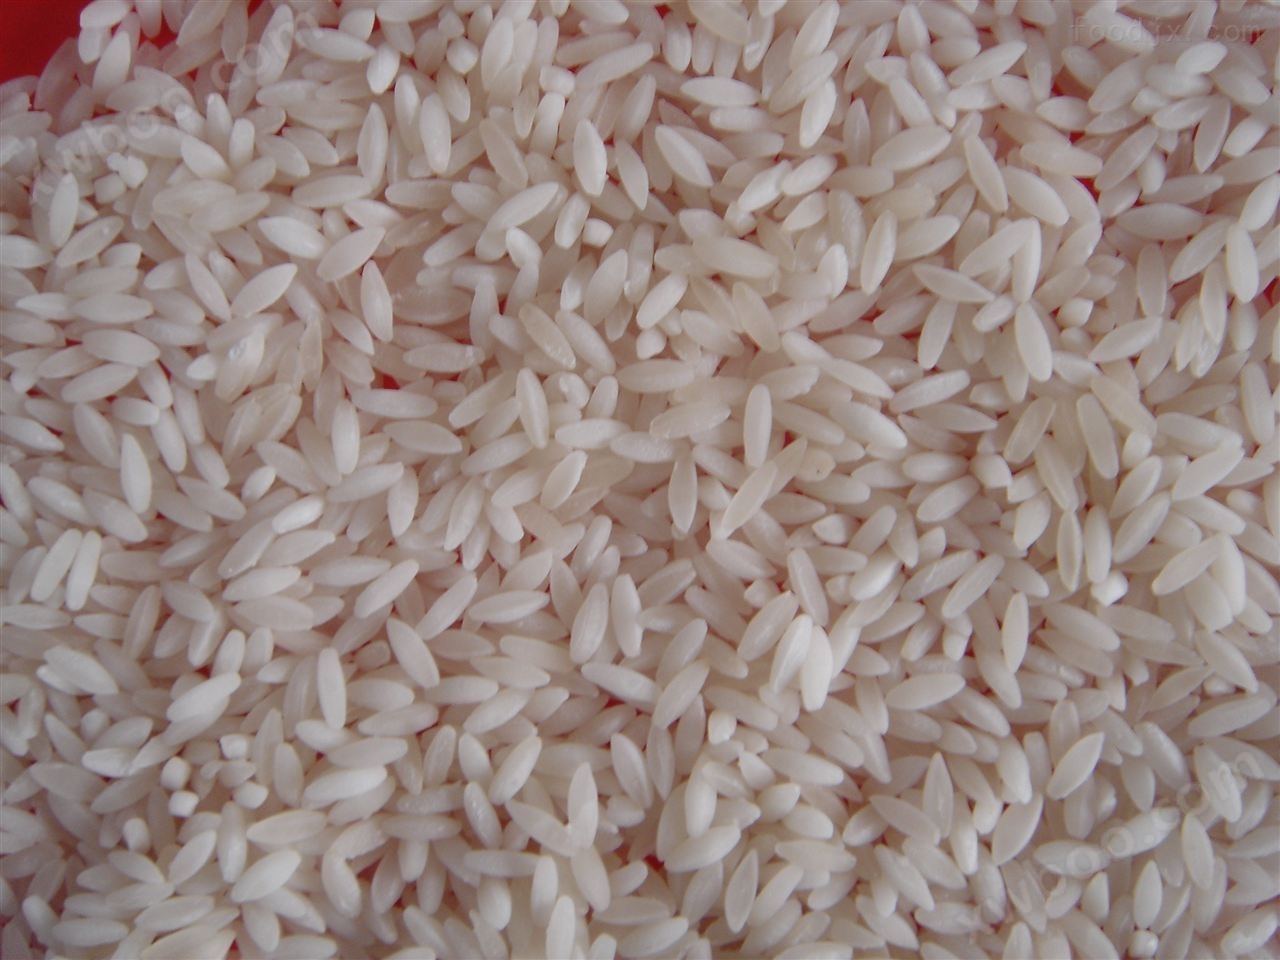 速食米生产线价格